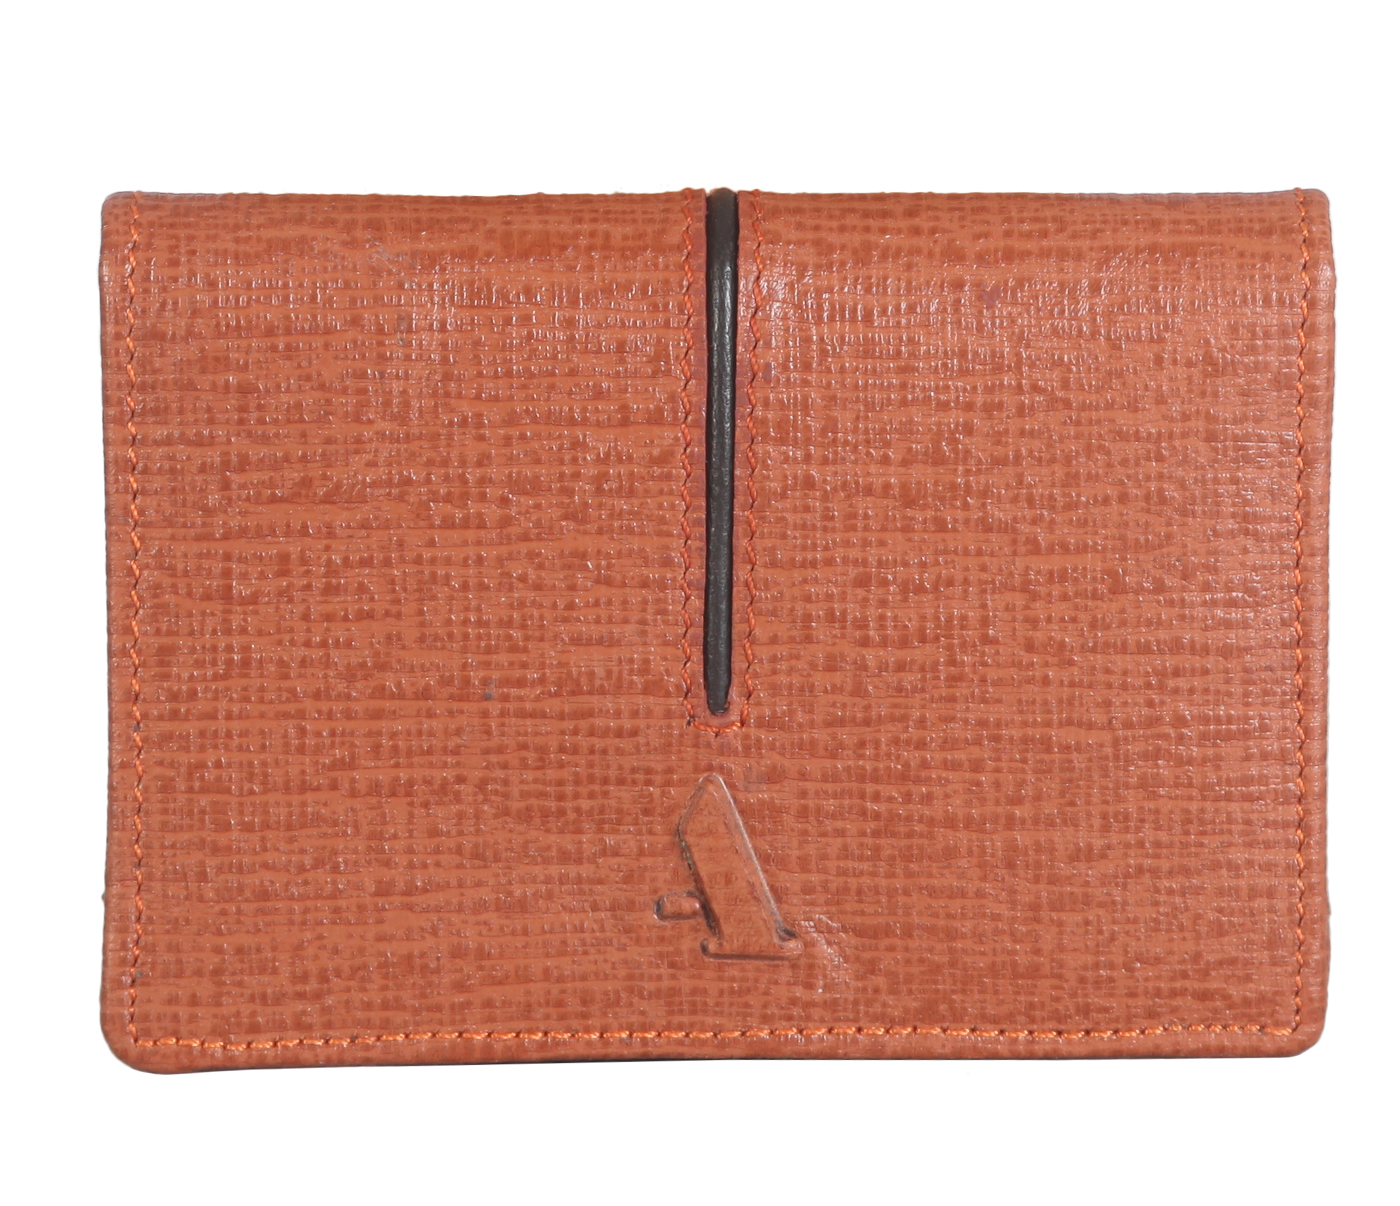 W302--Credit card cum business card case in Genuine Leather - Tan